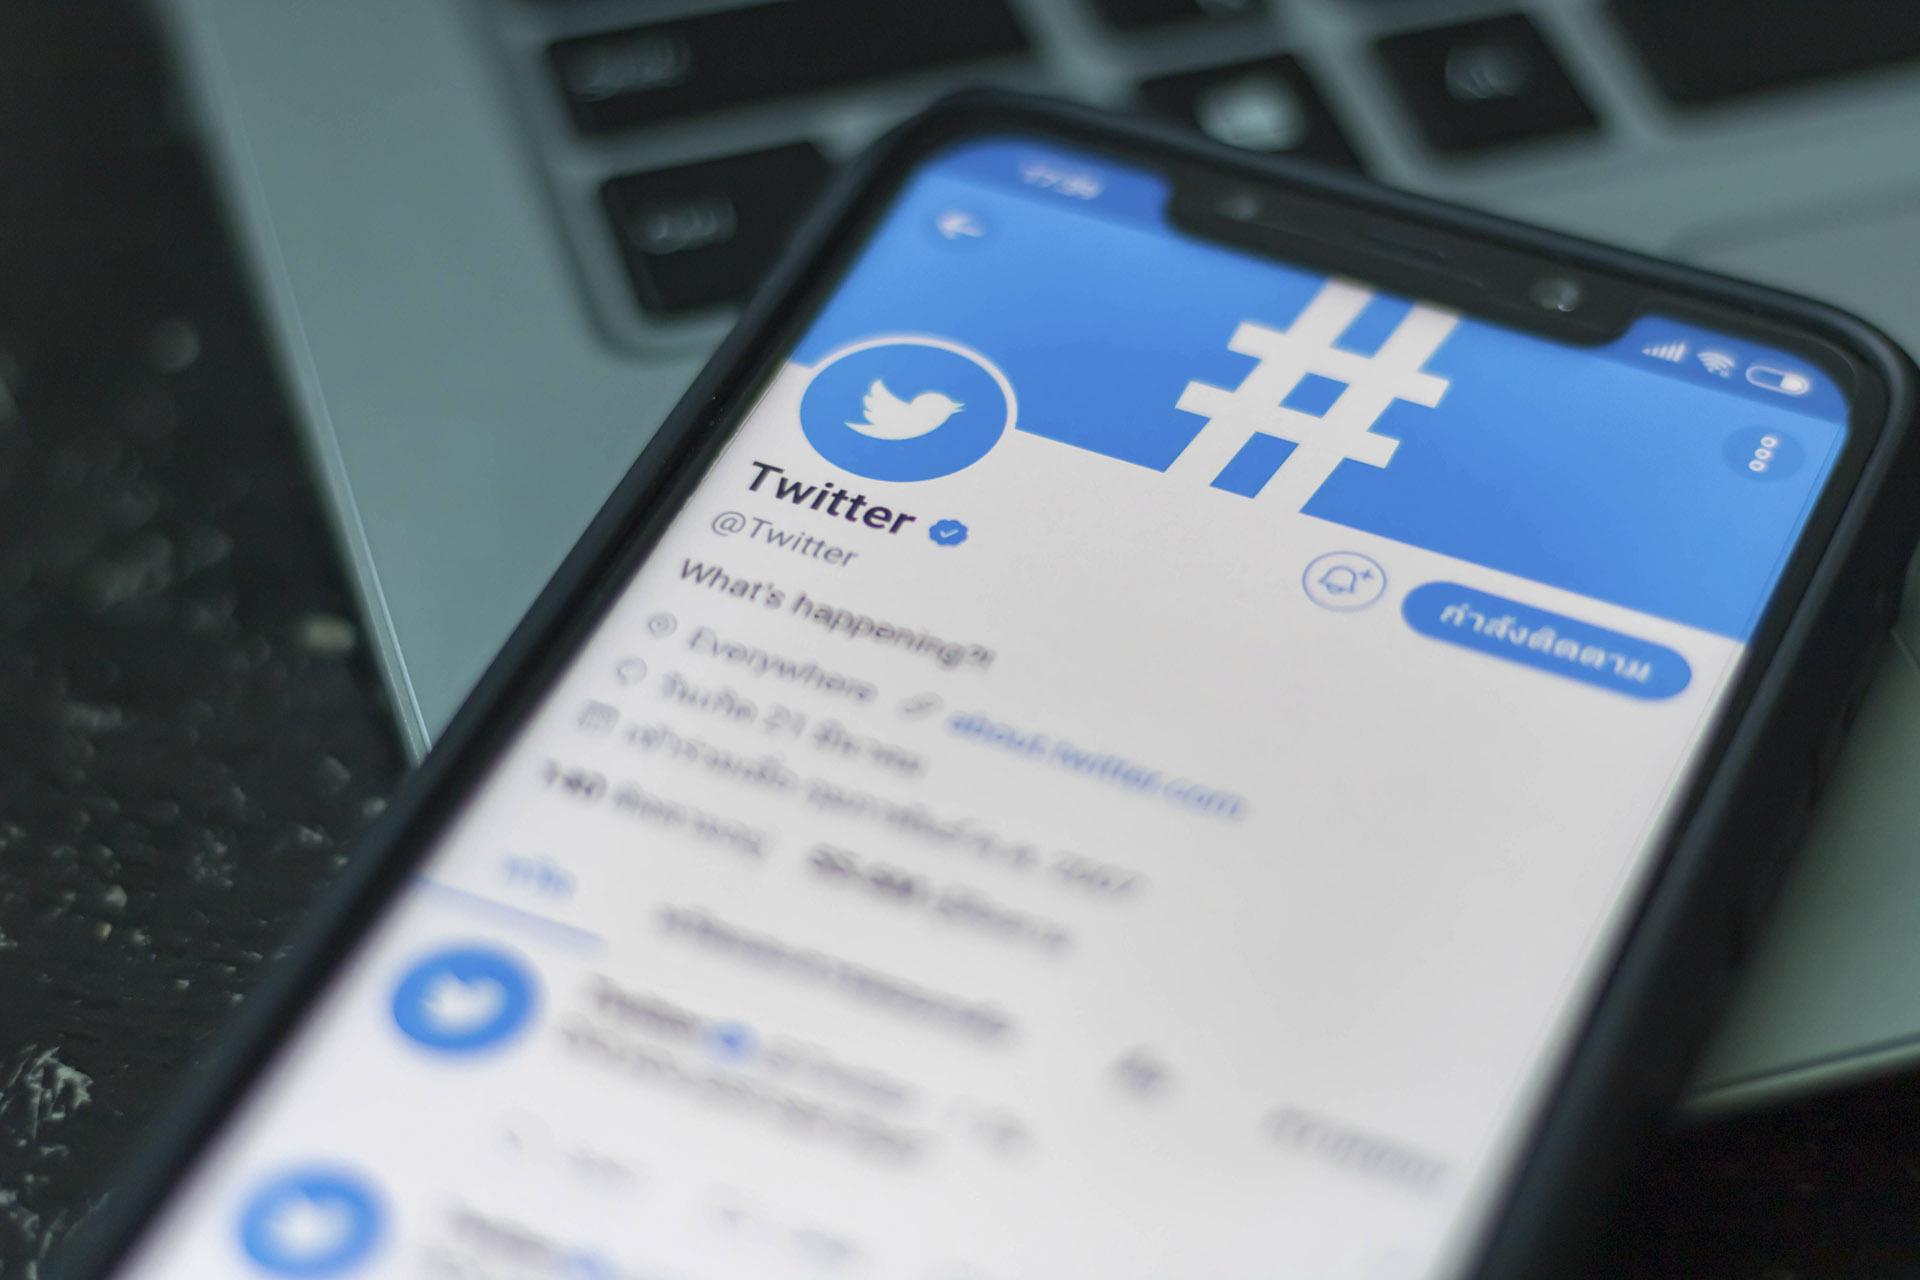 Oroszország lelassította a Twitter-forgalmát, a tiltott tartalmakra hivatkoznak